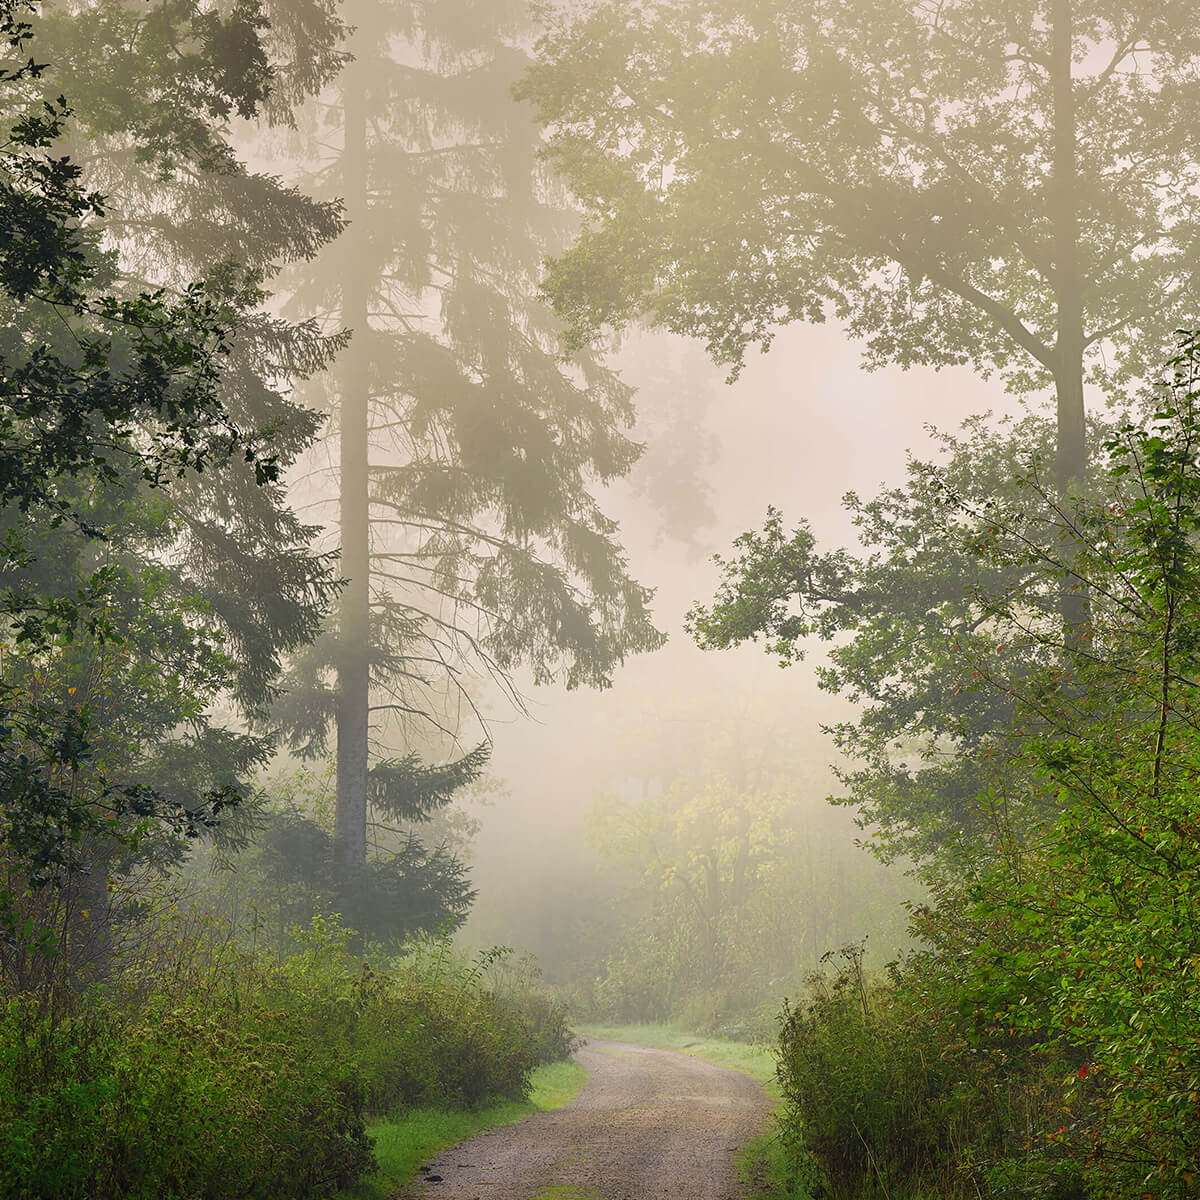 Road through foggy forest